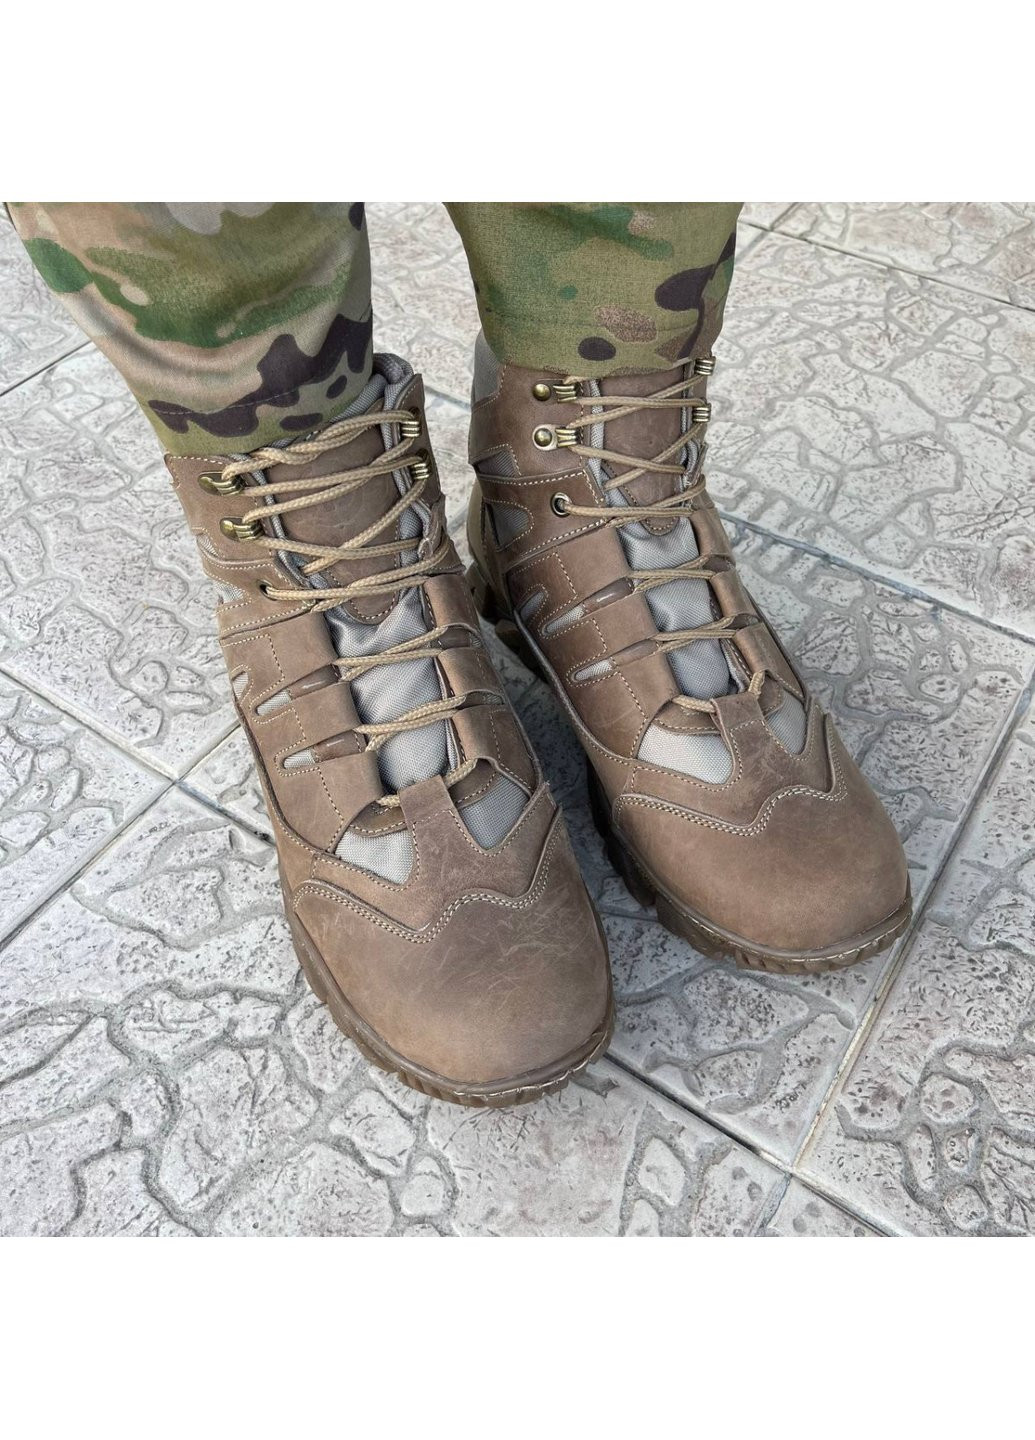 Коричневые осенние ботинки военные тактические всу (зсу) 7525 40 р 26 см коричневые Power